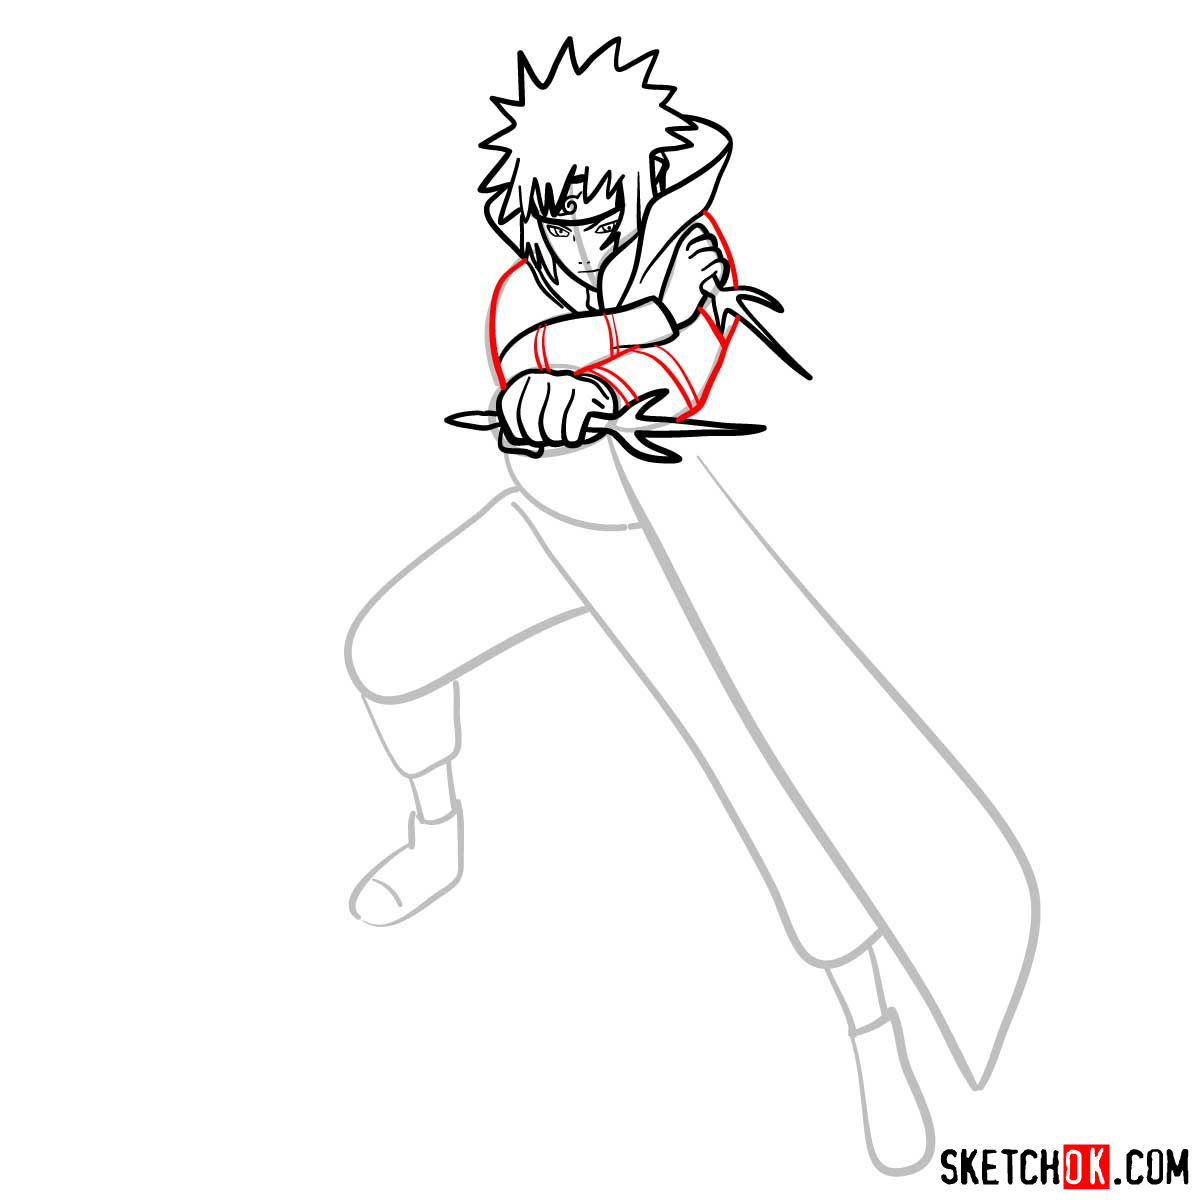 How to draw Minato Namikaze from Naruto anime - step 10